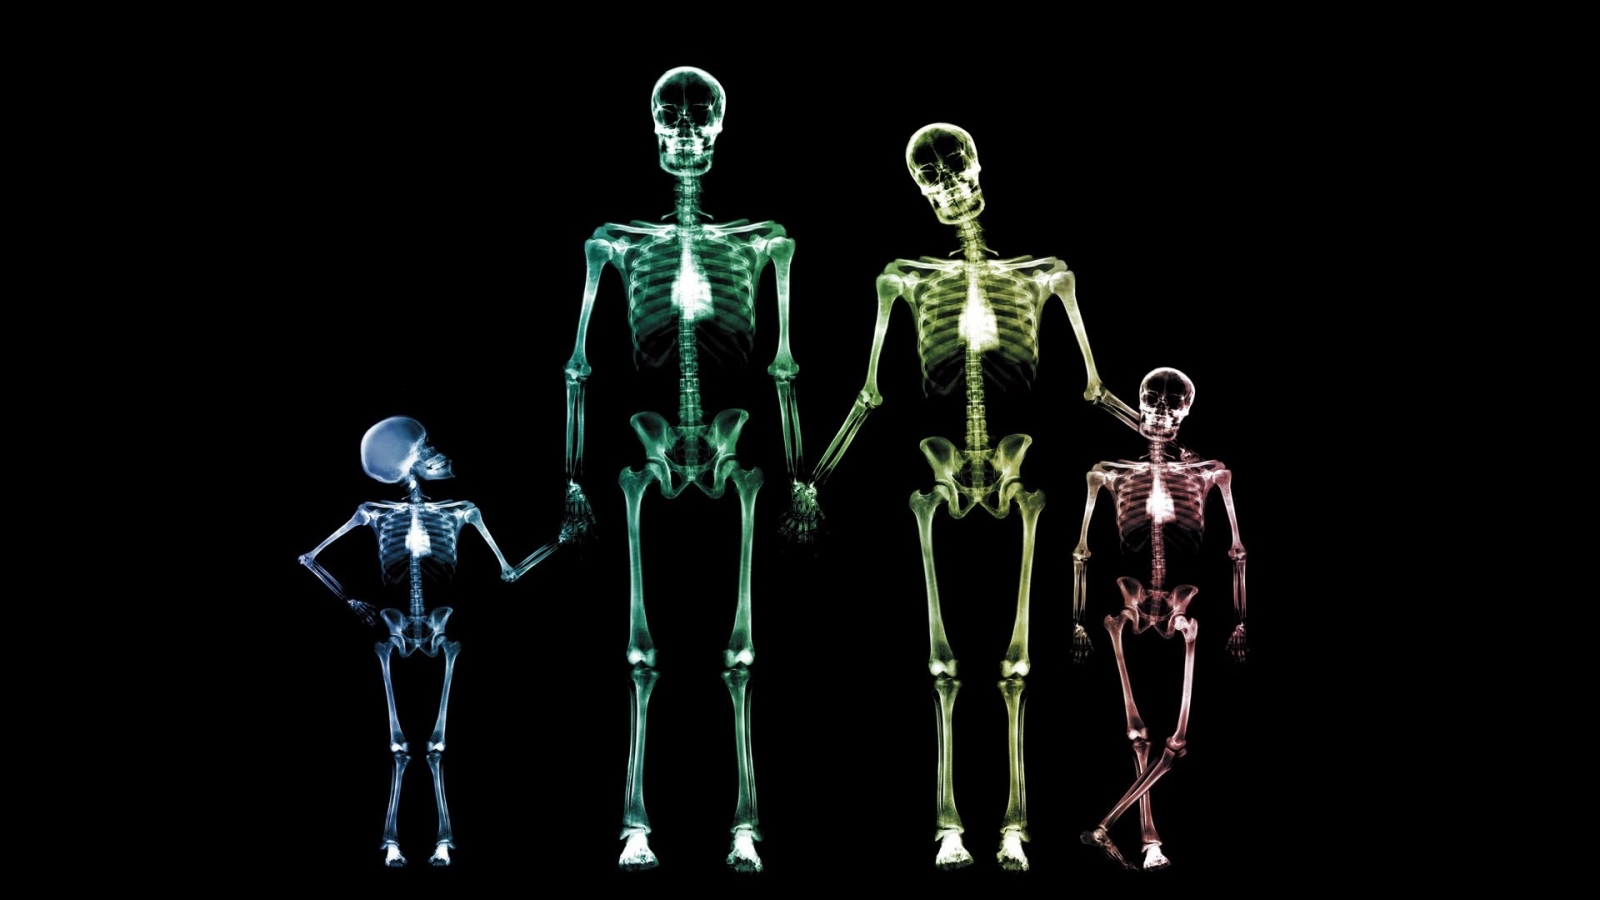 Family Skeletons for 1600 x 900 HDTV resolution